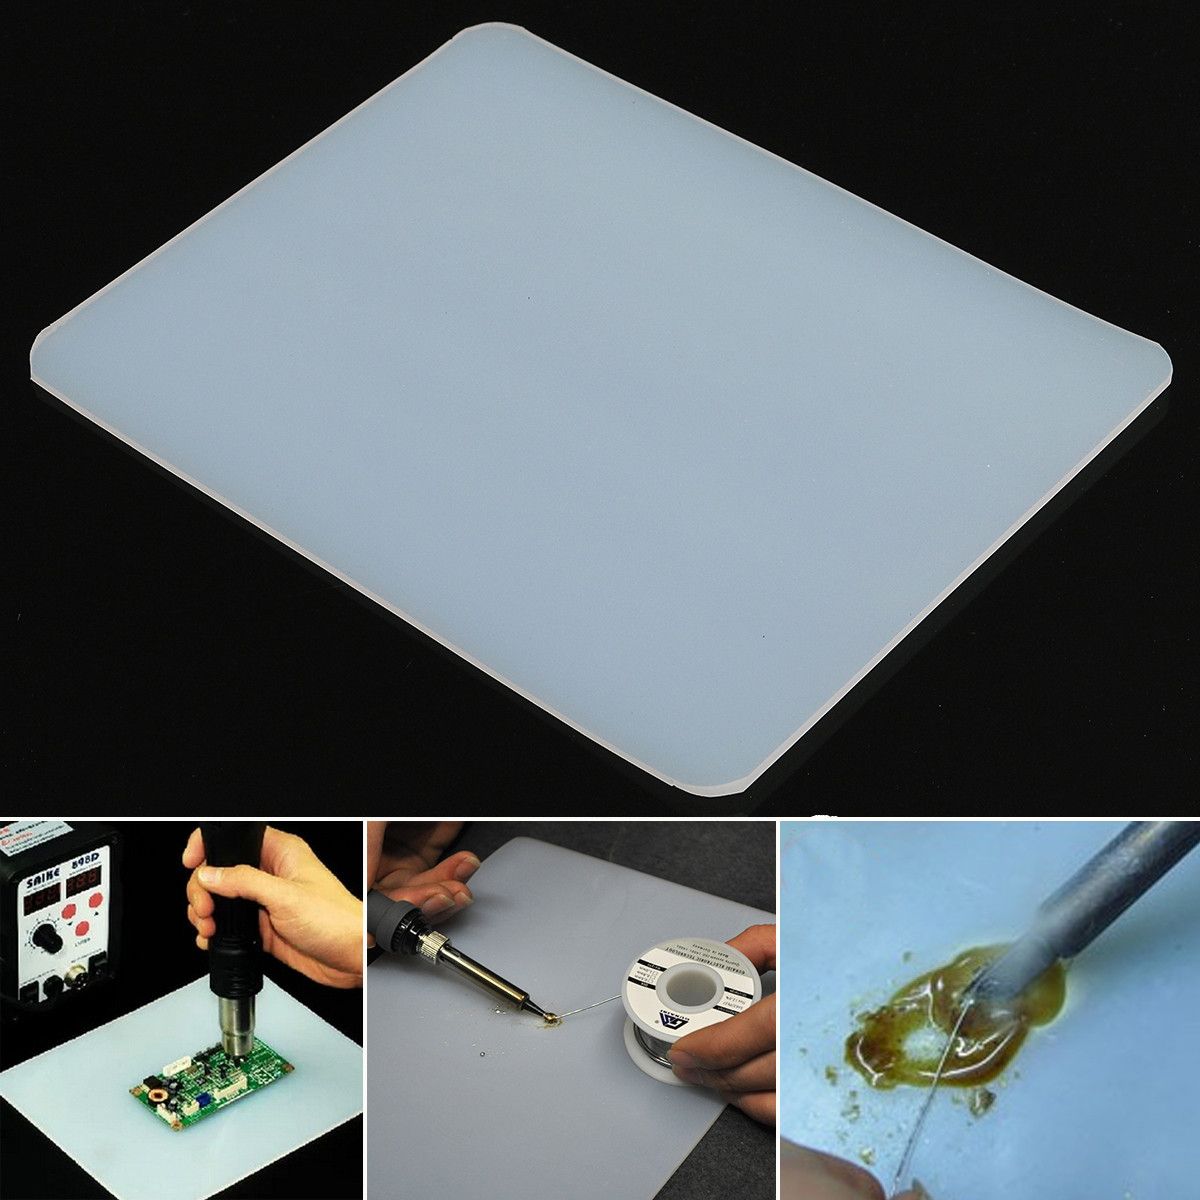 DANIU-Heat-Resistant-Silicone-Pad-Desk-Mat-Heat-Insulation-Maintenance-Platform-BGA-Soldering-Repair-1114874